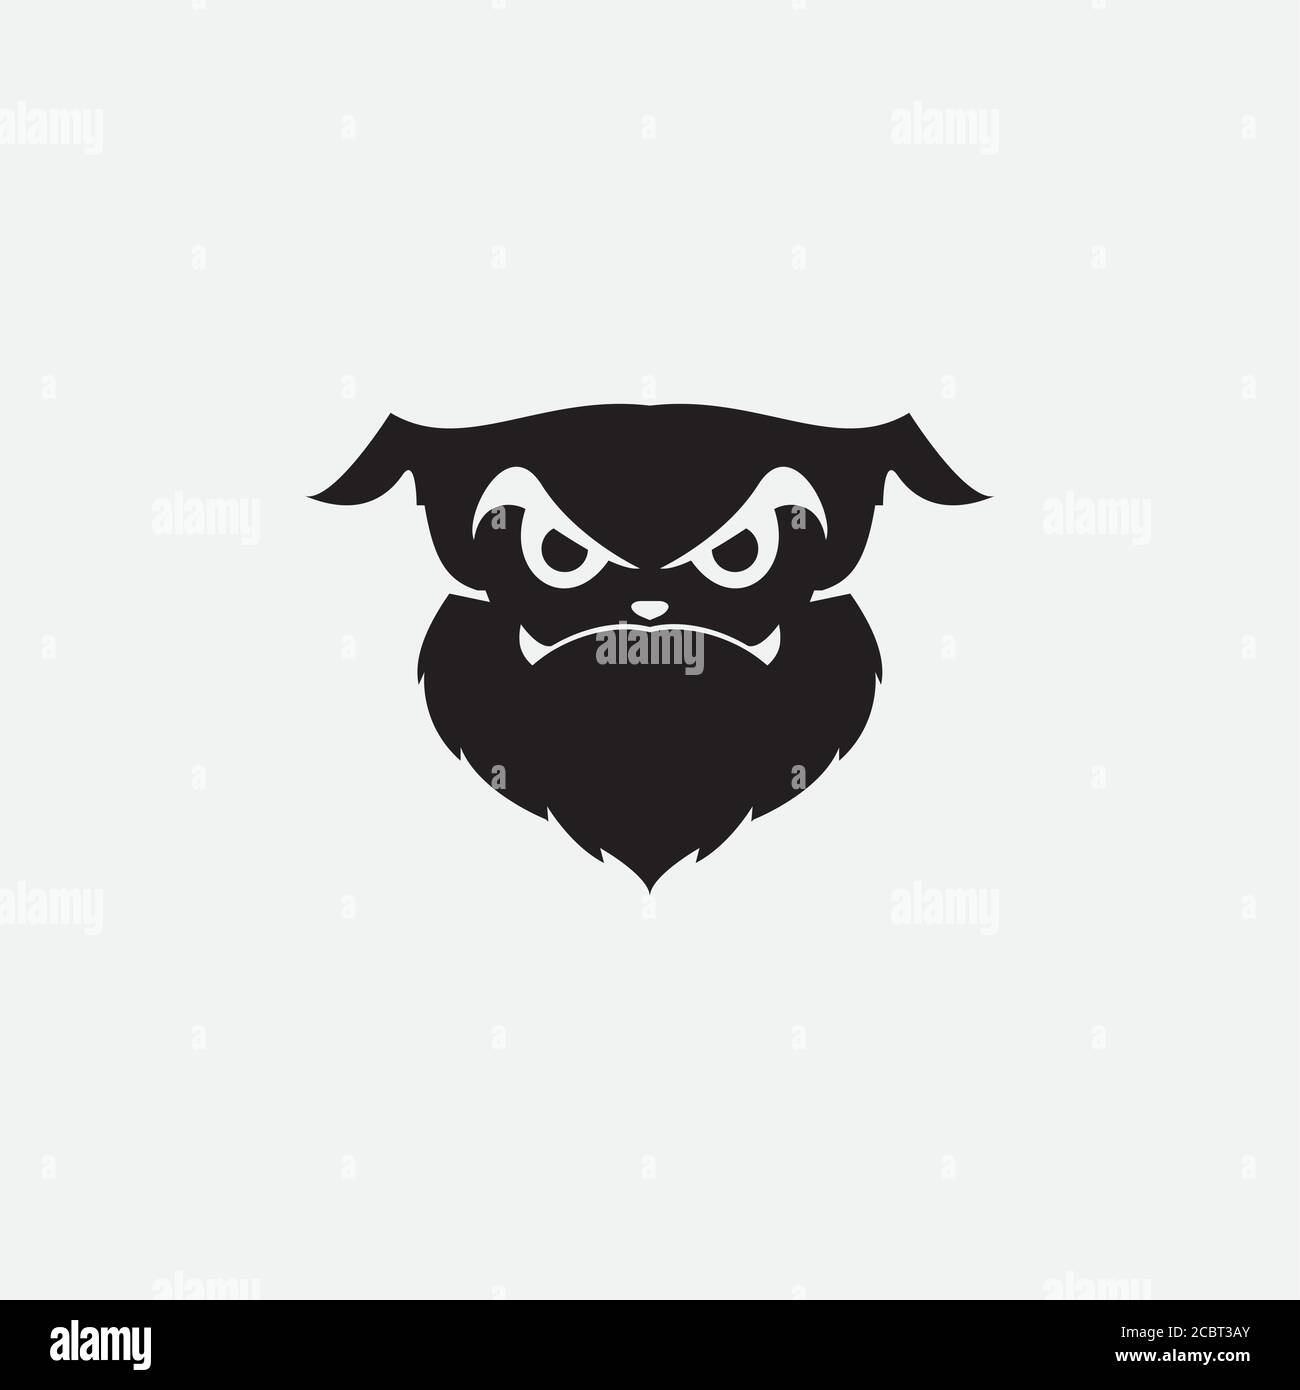 dog face scary silhouette  logo design Stock Vector